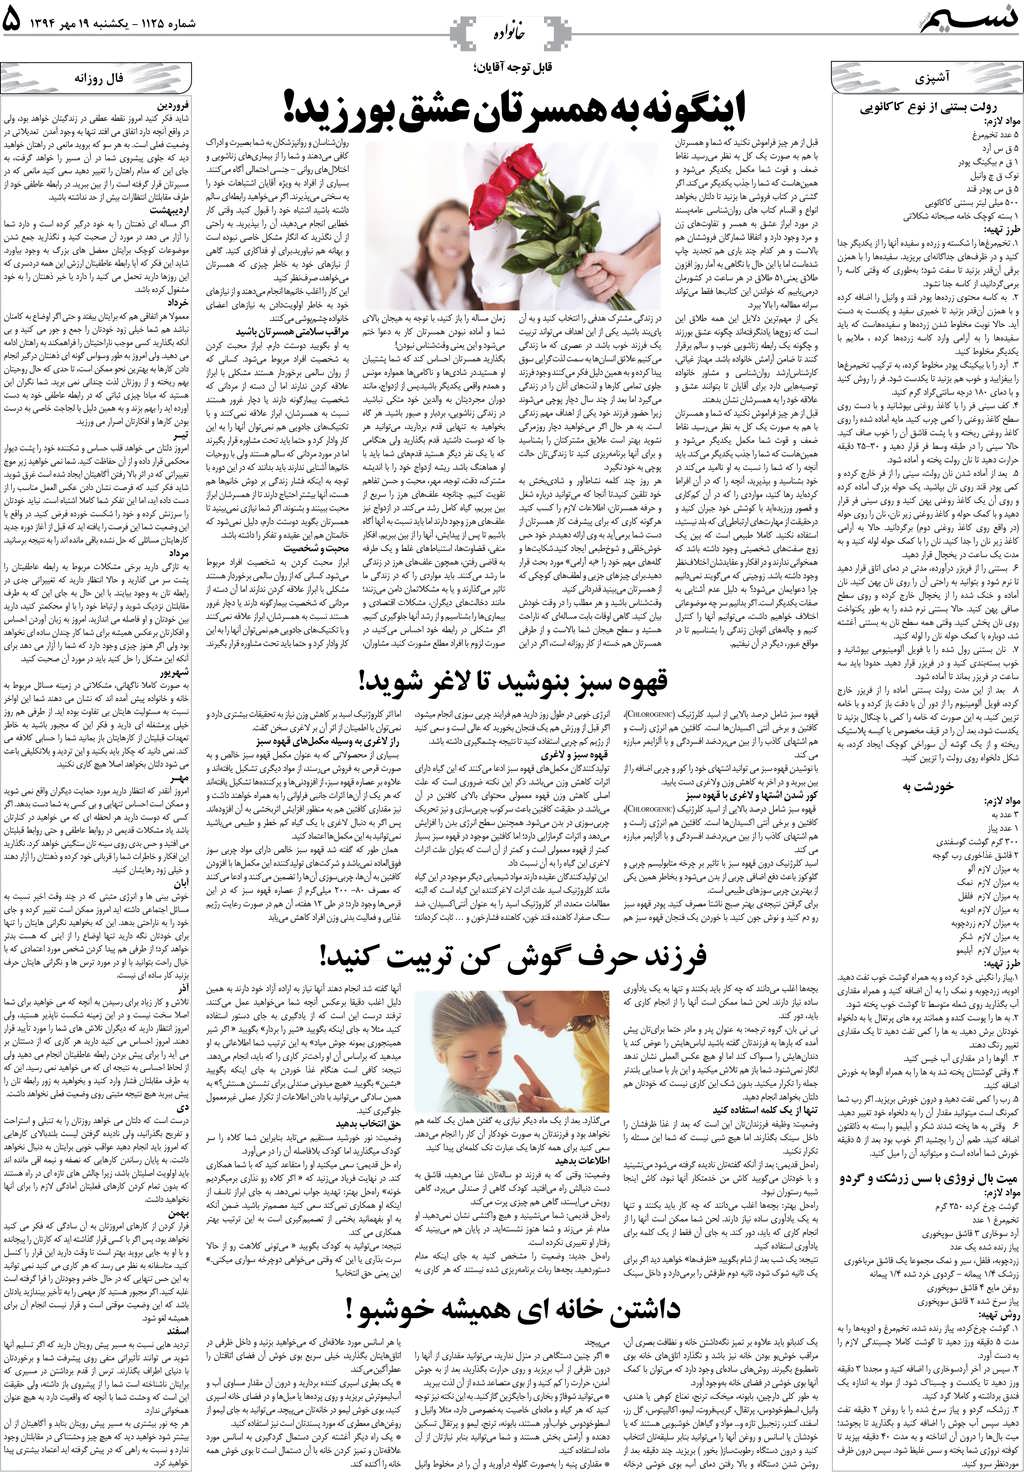 صفحه خانواده روزنامه نسیم شماره 1125